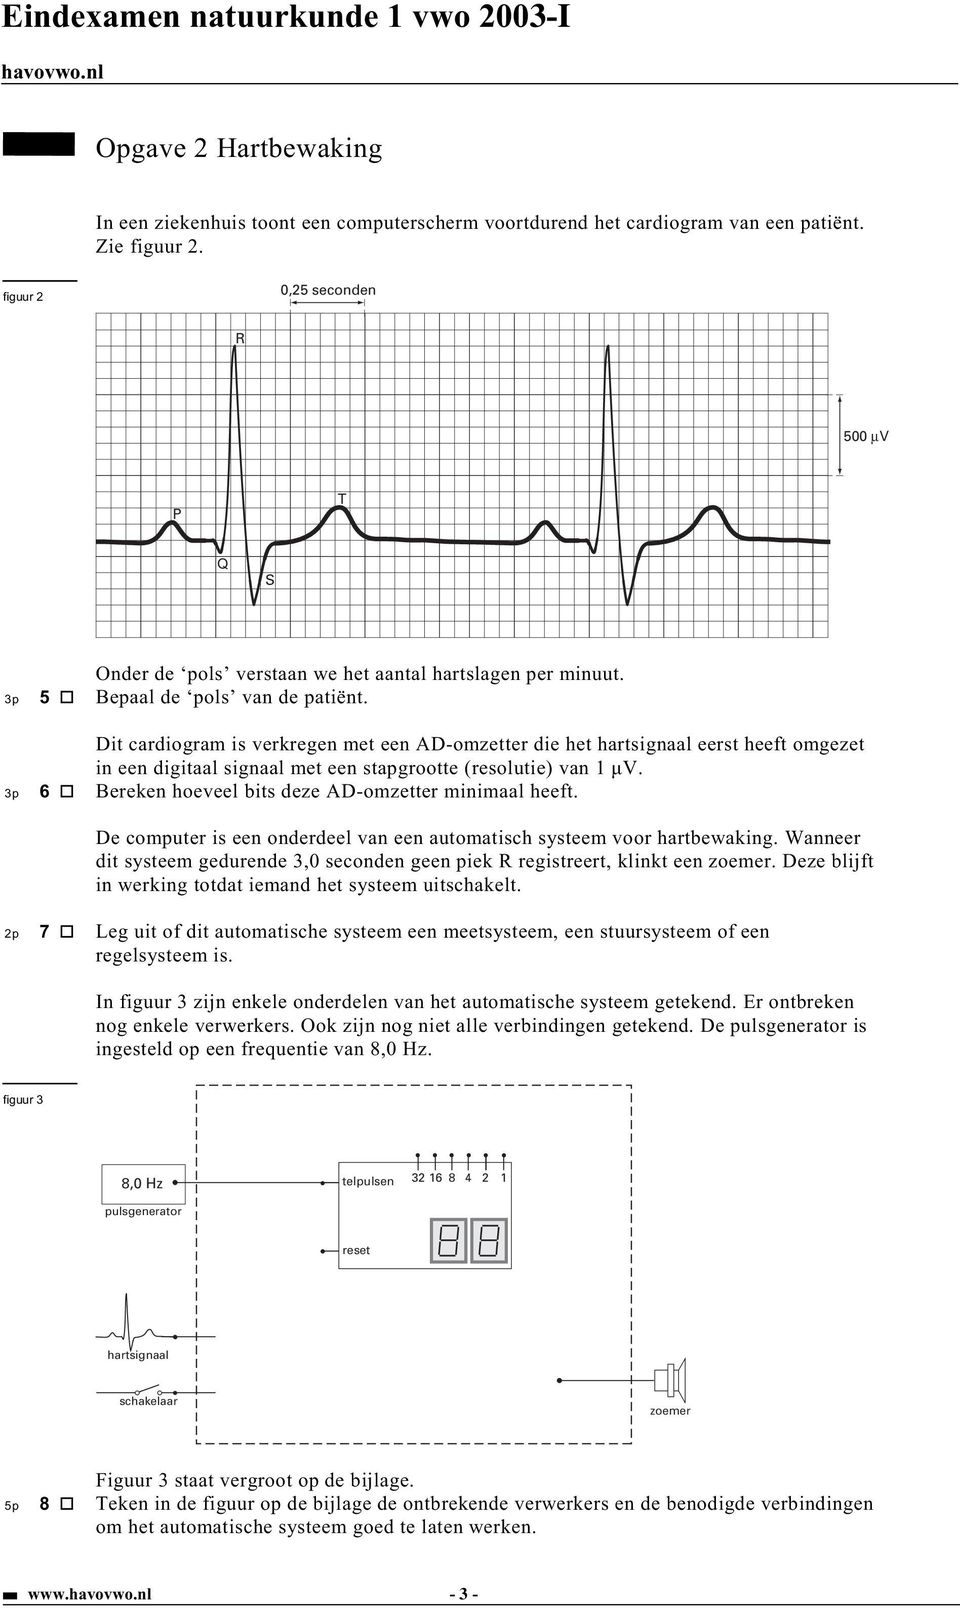 Dit cardiogram is verkregen met een AD-omzetter die het hartsignaal eerst heeft omgezet in een digitaal signaal met een stapgrootte (resolutie) van 1 µv.